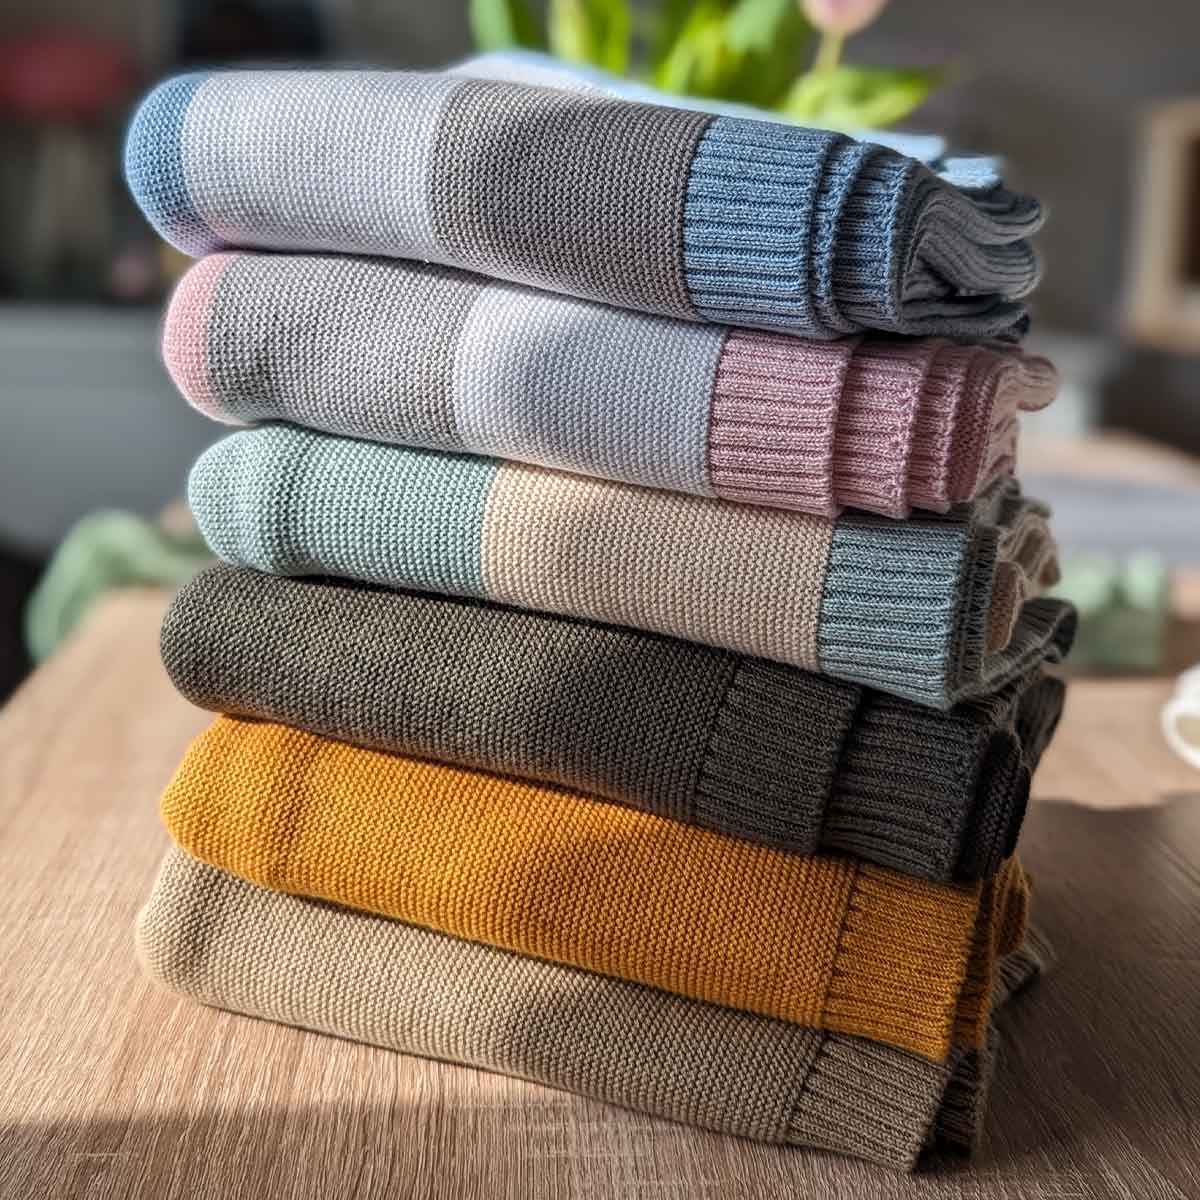 Stapel verschiedener gefalteter Bio-Baumwolldecken in mehreren Farben auf einem Holztisch.